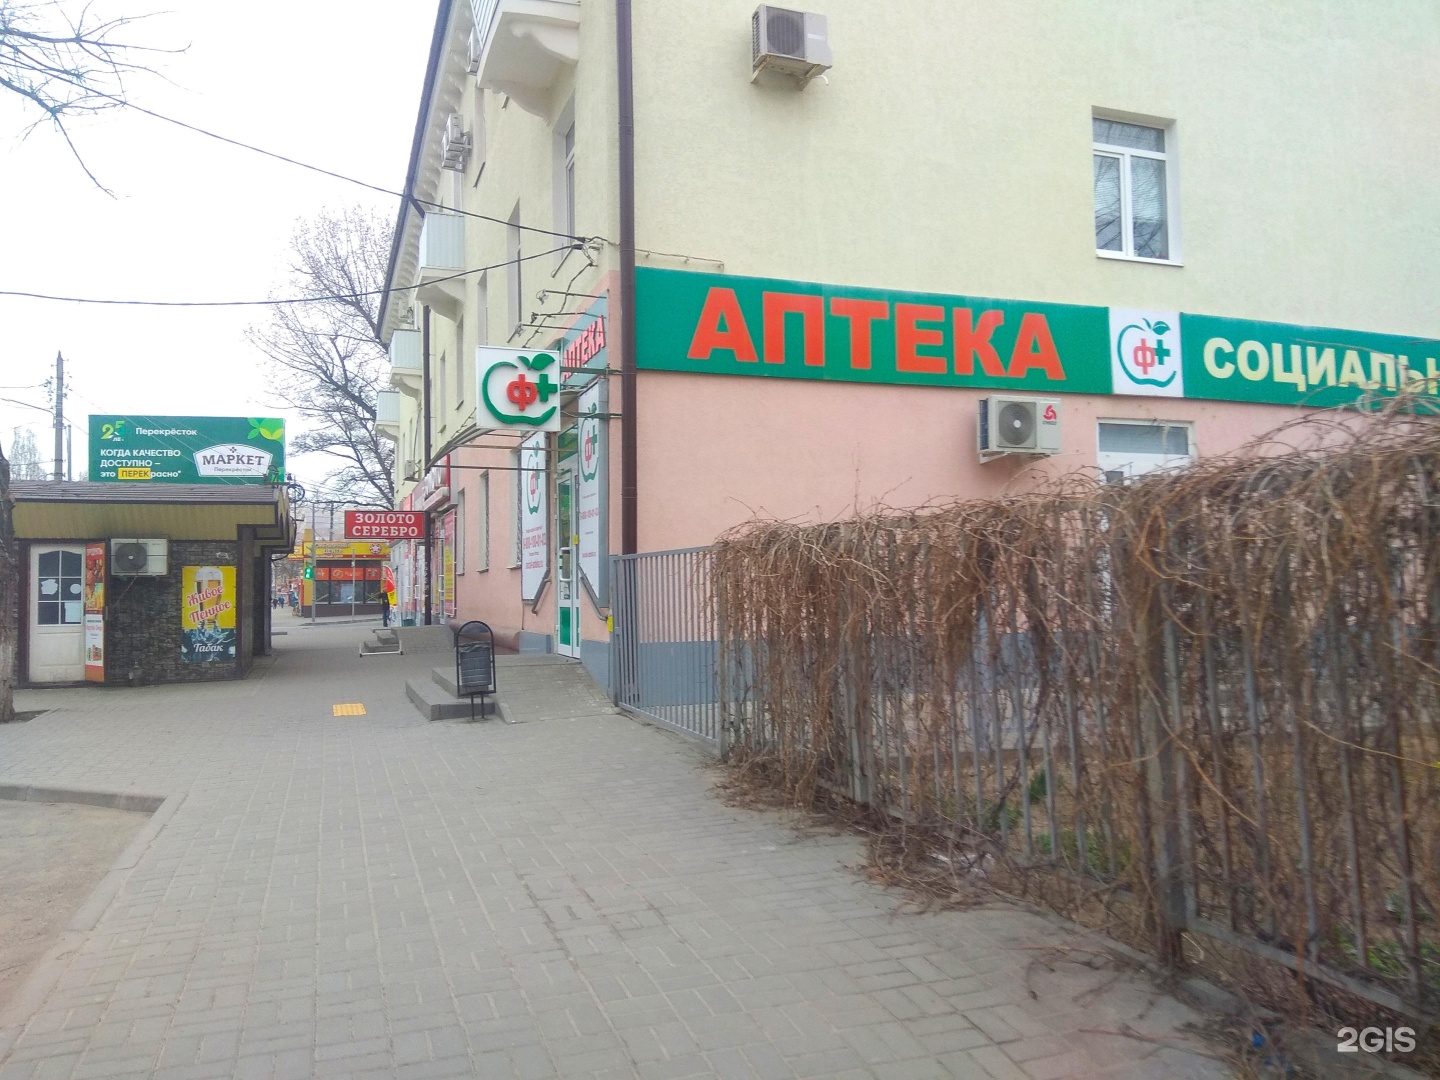 Азовская 24 корпус 2 аптека.